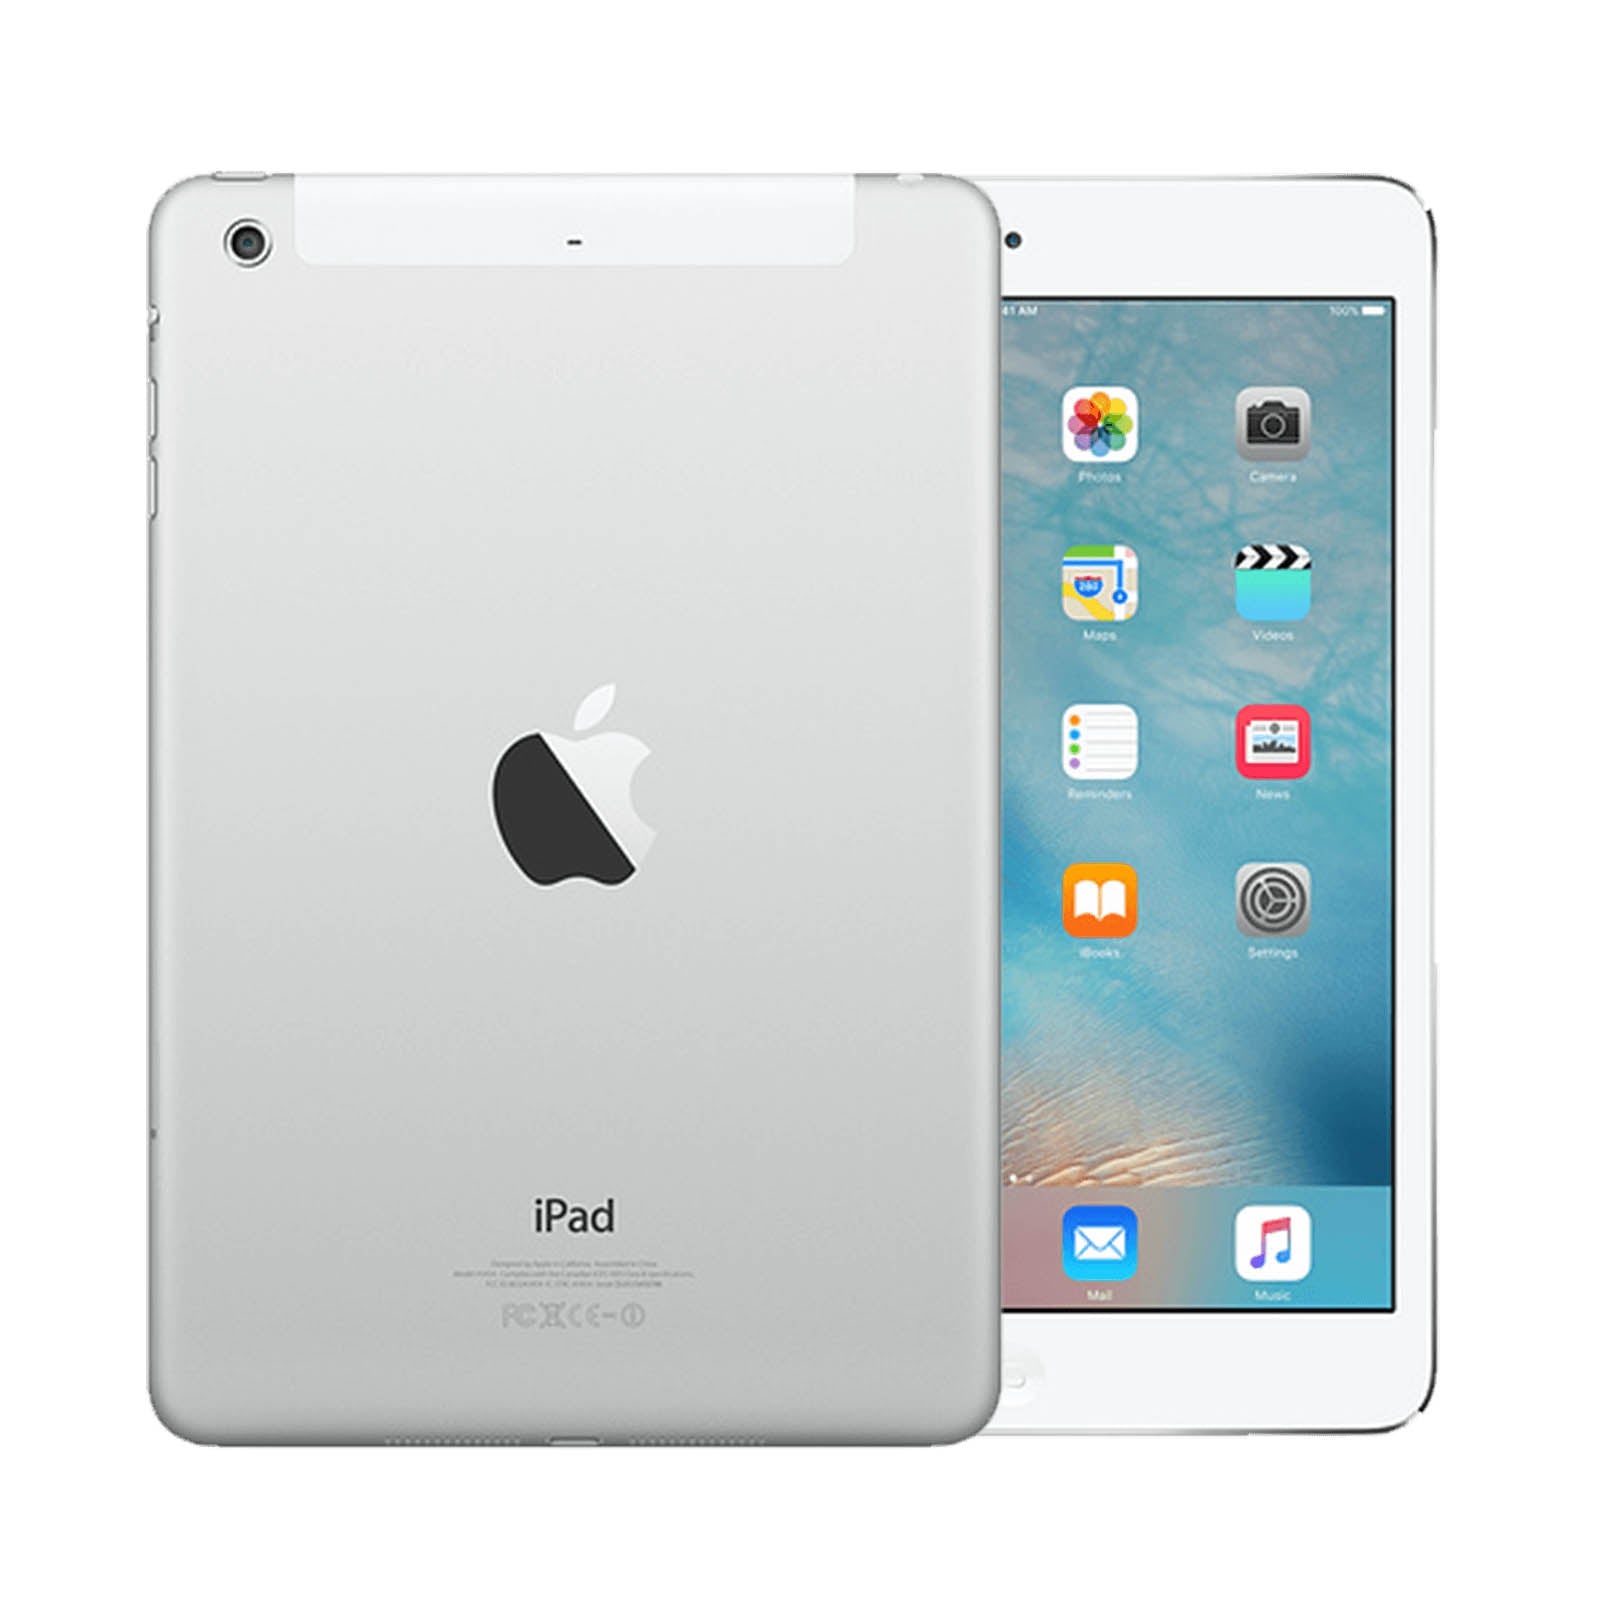 Apple iPad mini 2 32GB White Good - Unlocked